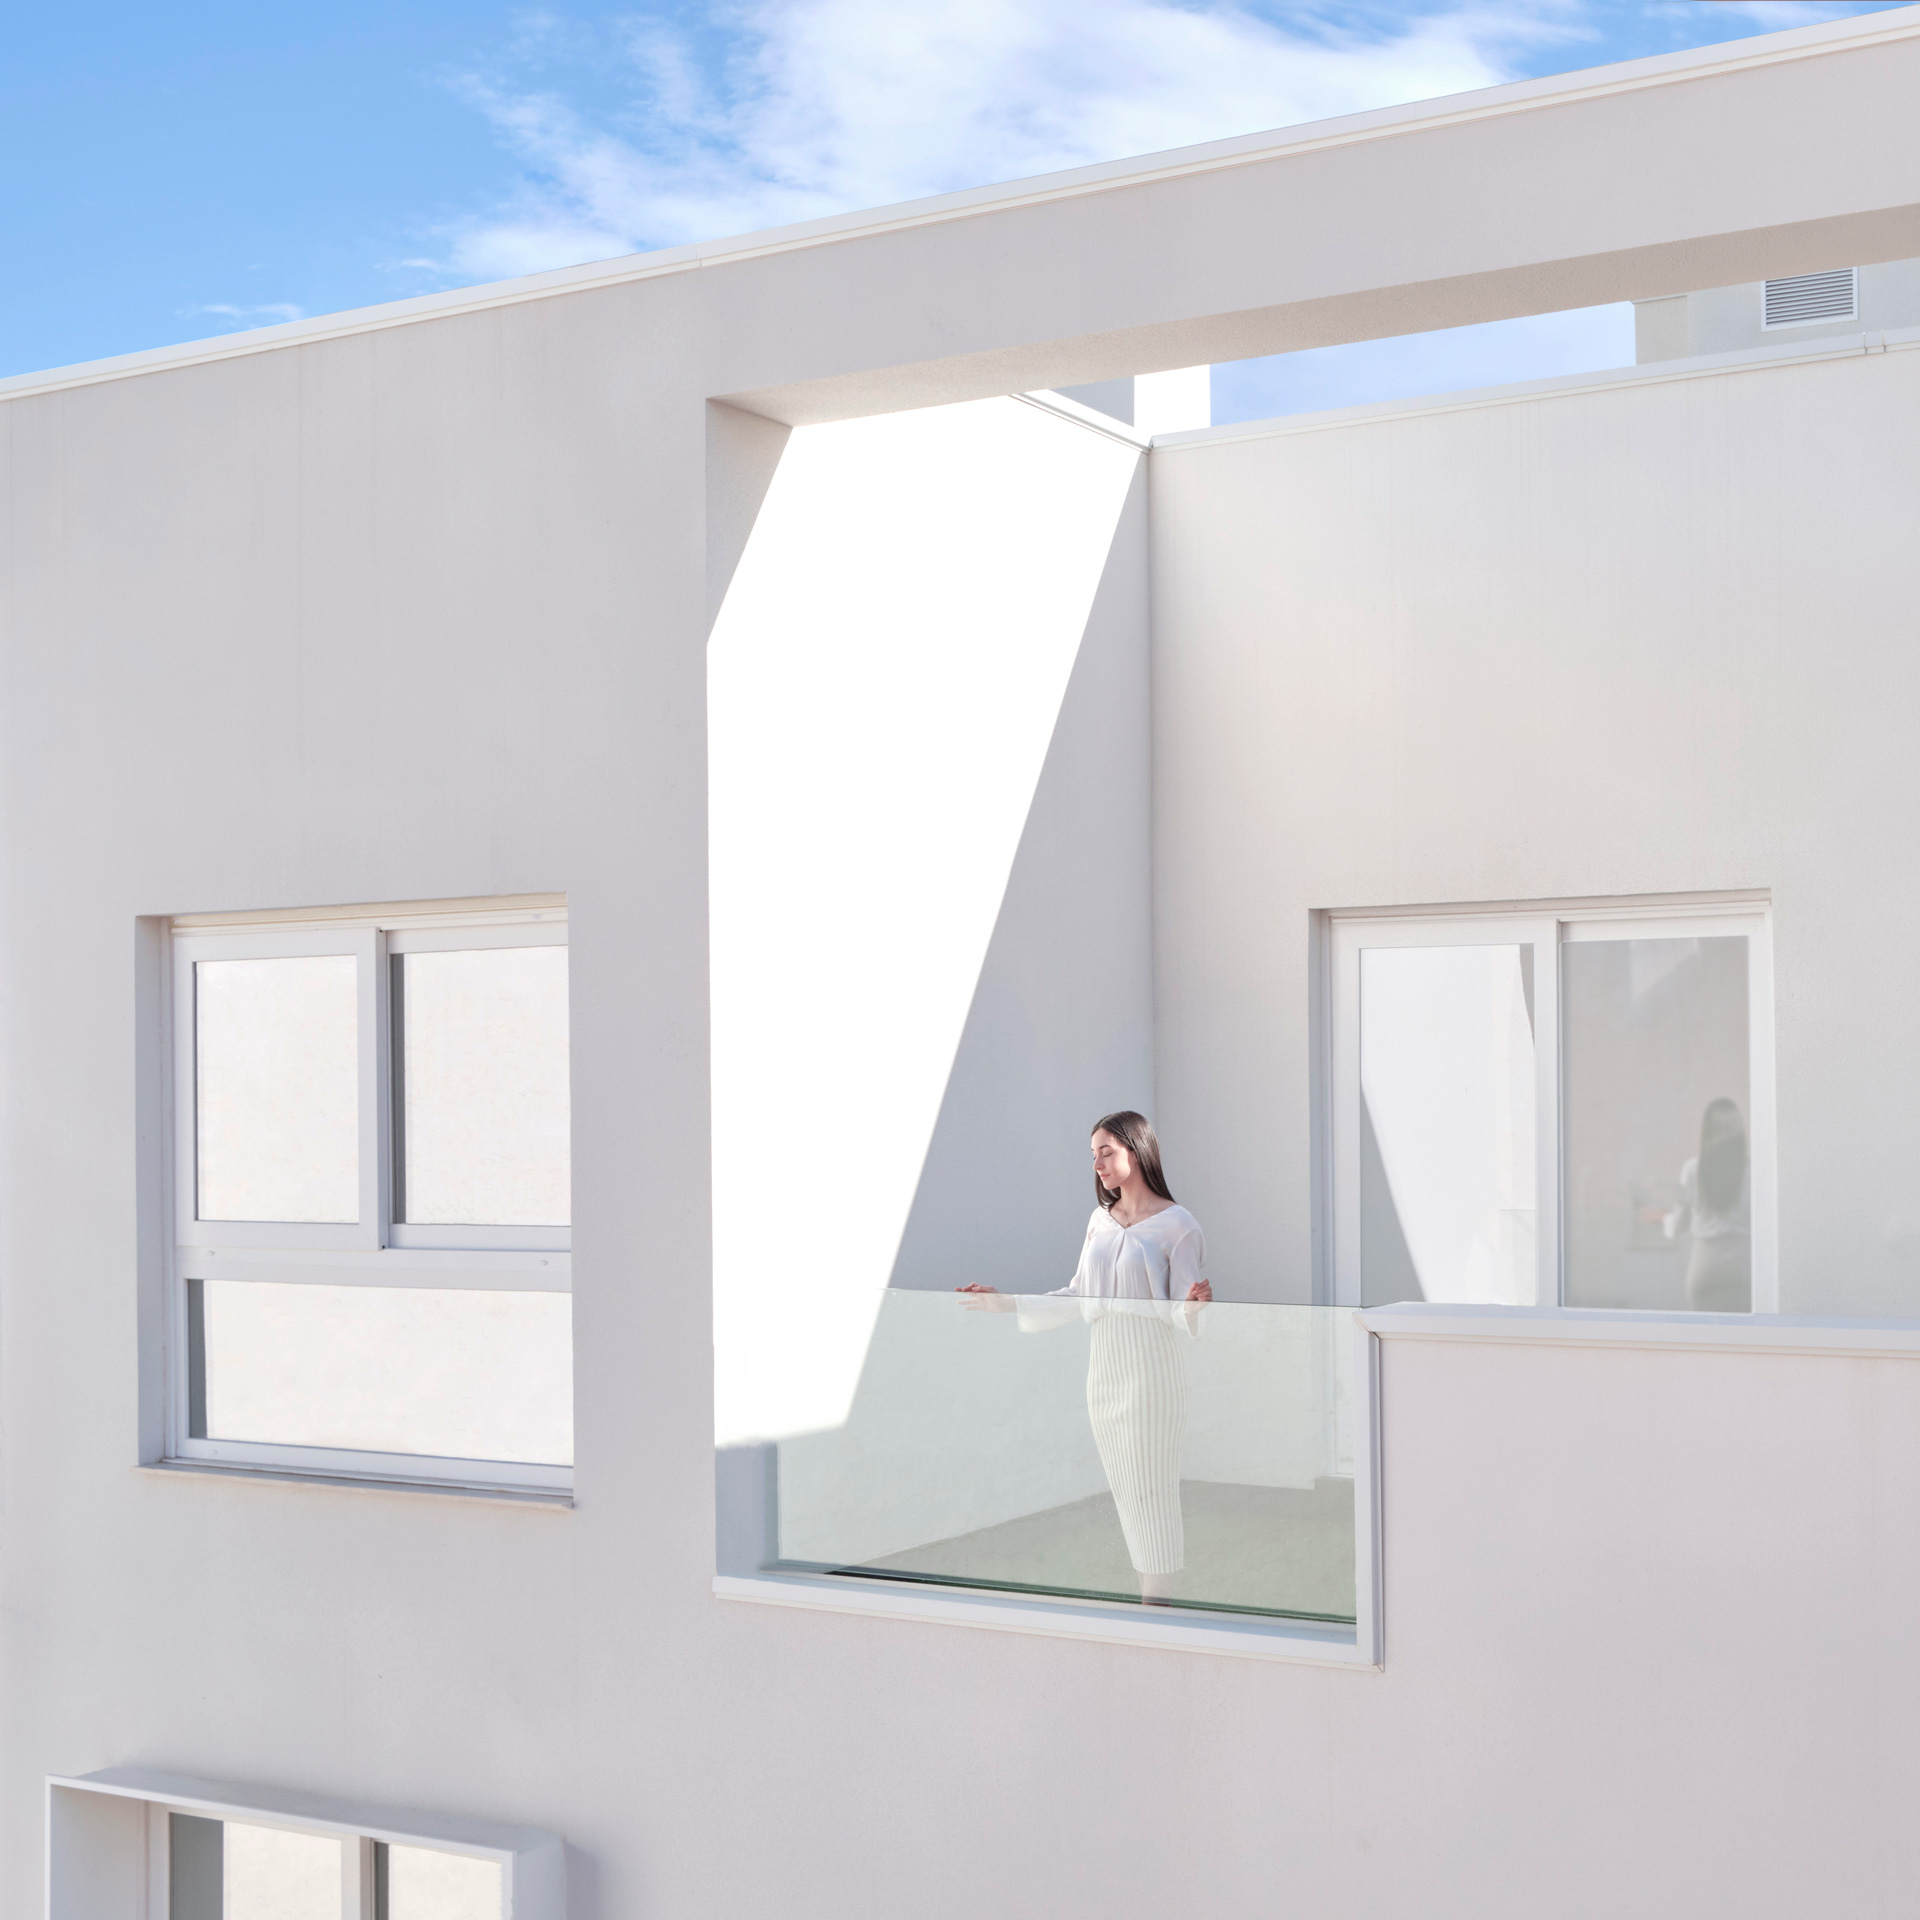 Fachada blanca de diseño minimalista de edificio residencial